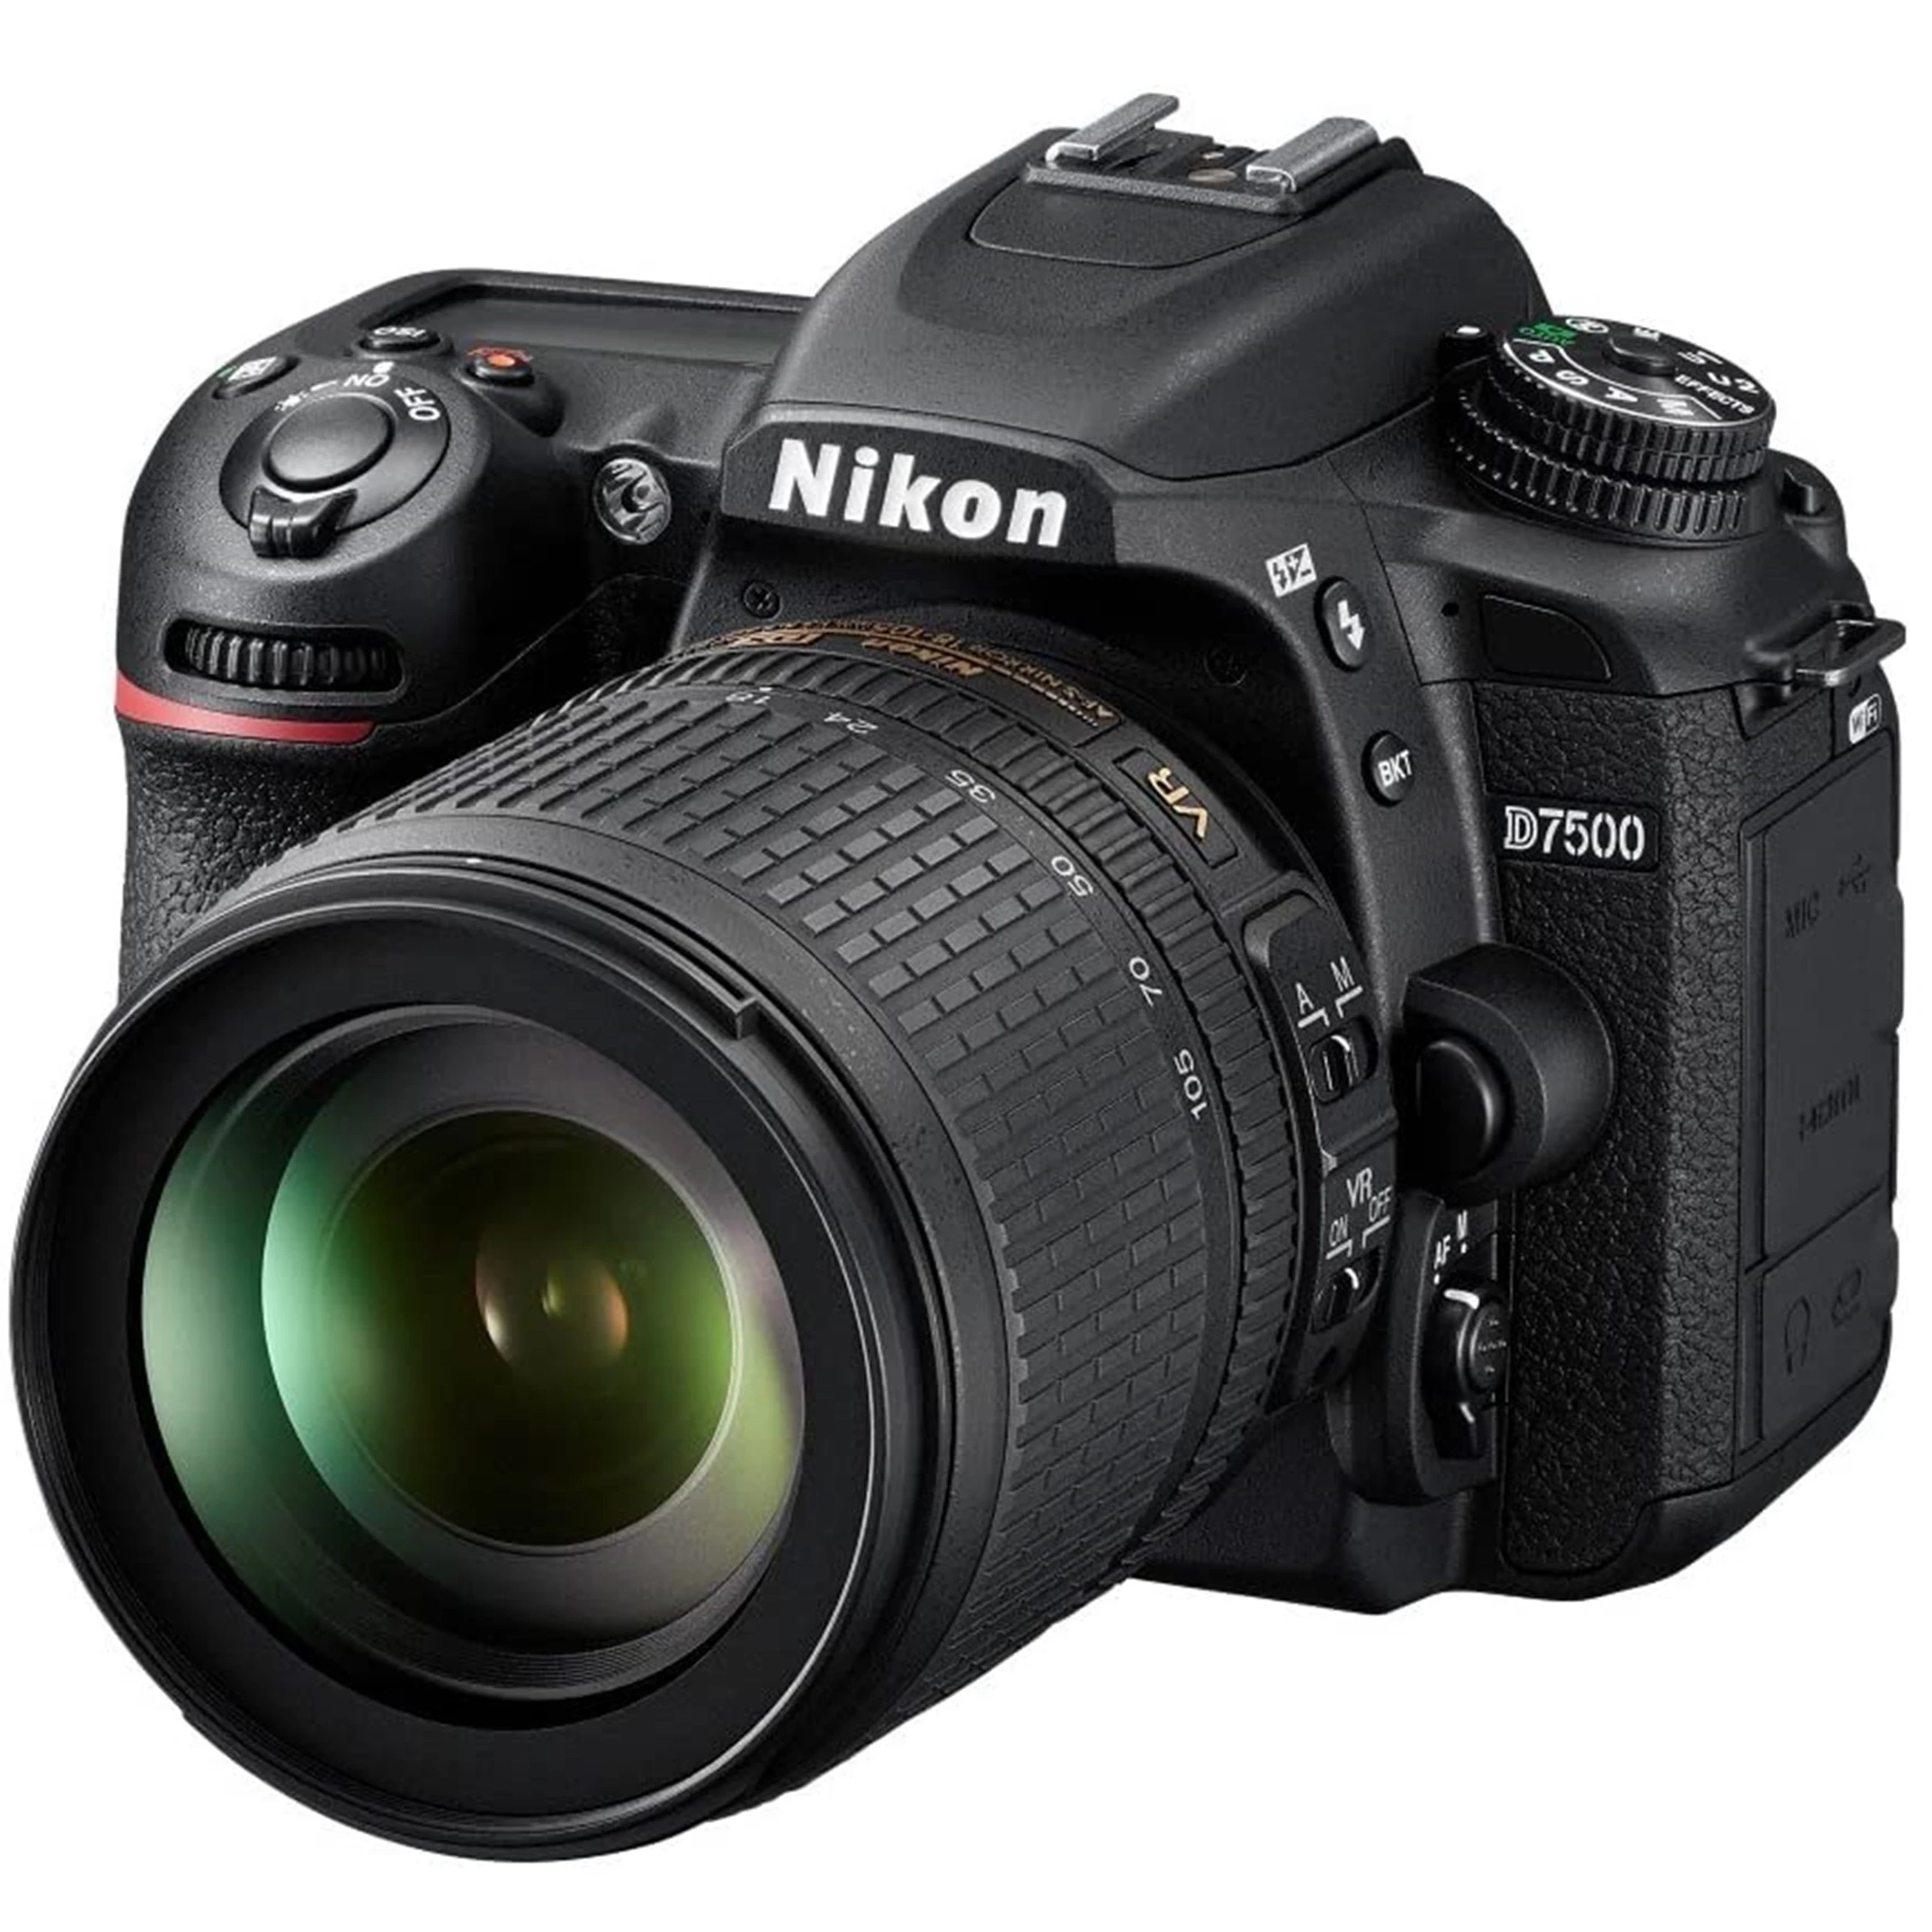 

Nikon D7500 Digital DSLR Camera with AF-S DX 18-105mm F3.5-5.6G ED VR